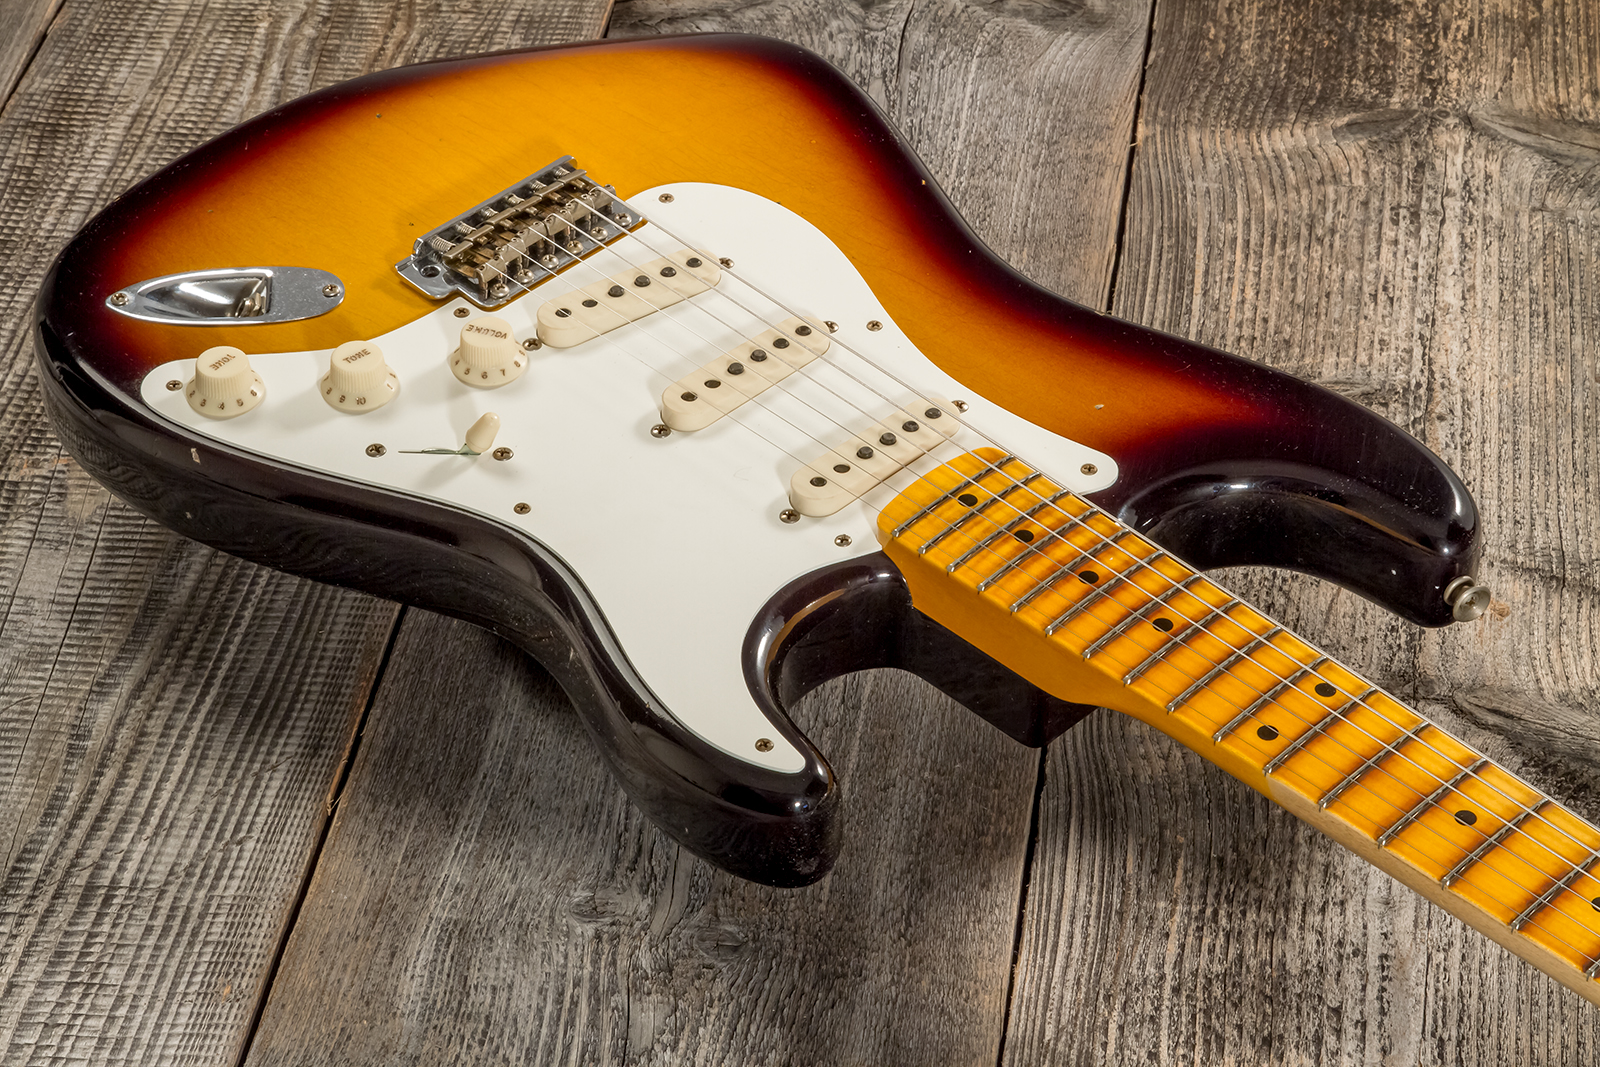 Fender Custom Shop Strat 1956 3s Trem Mn #cz570281 - Journeyman Relic Aged 2-color Sunburst - E-Gitarre in Str-Form - Variation 2